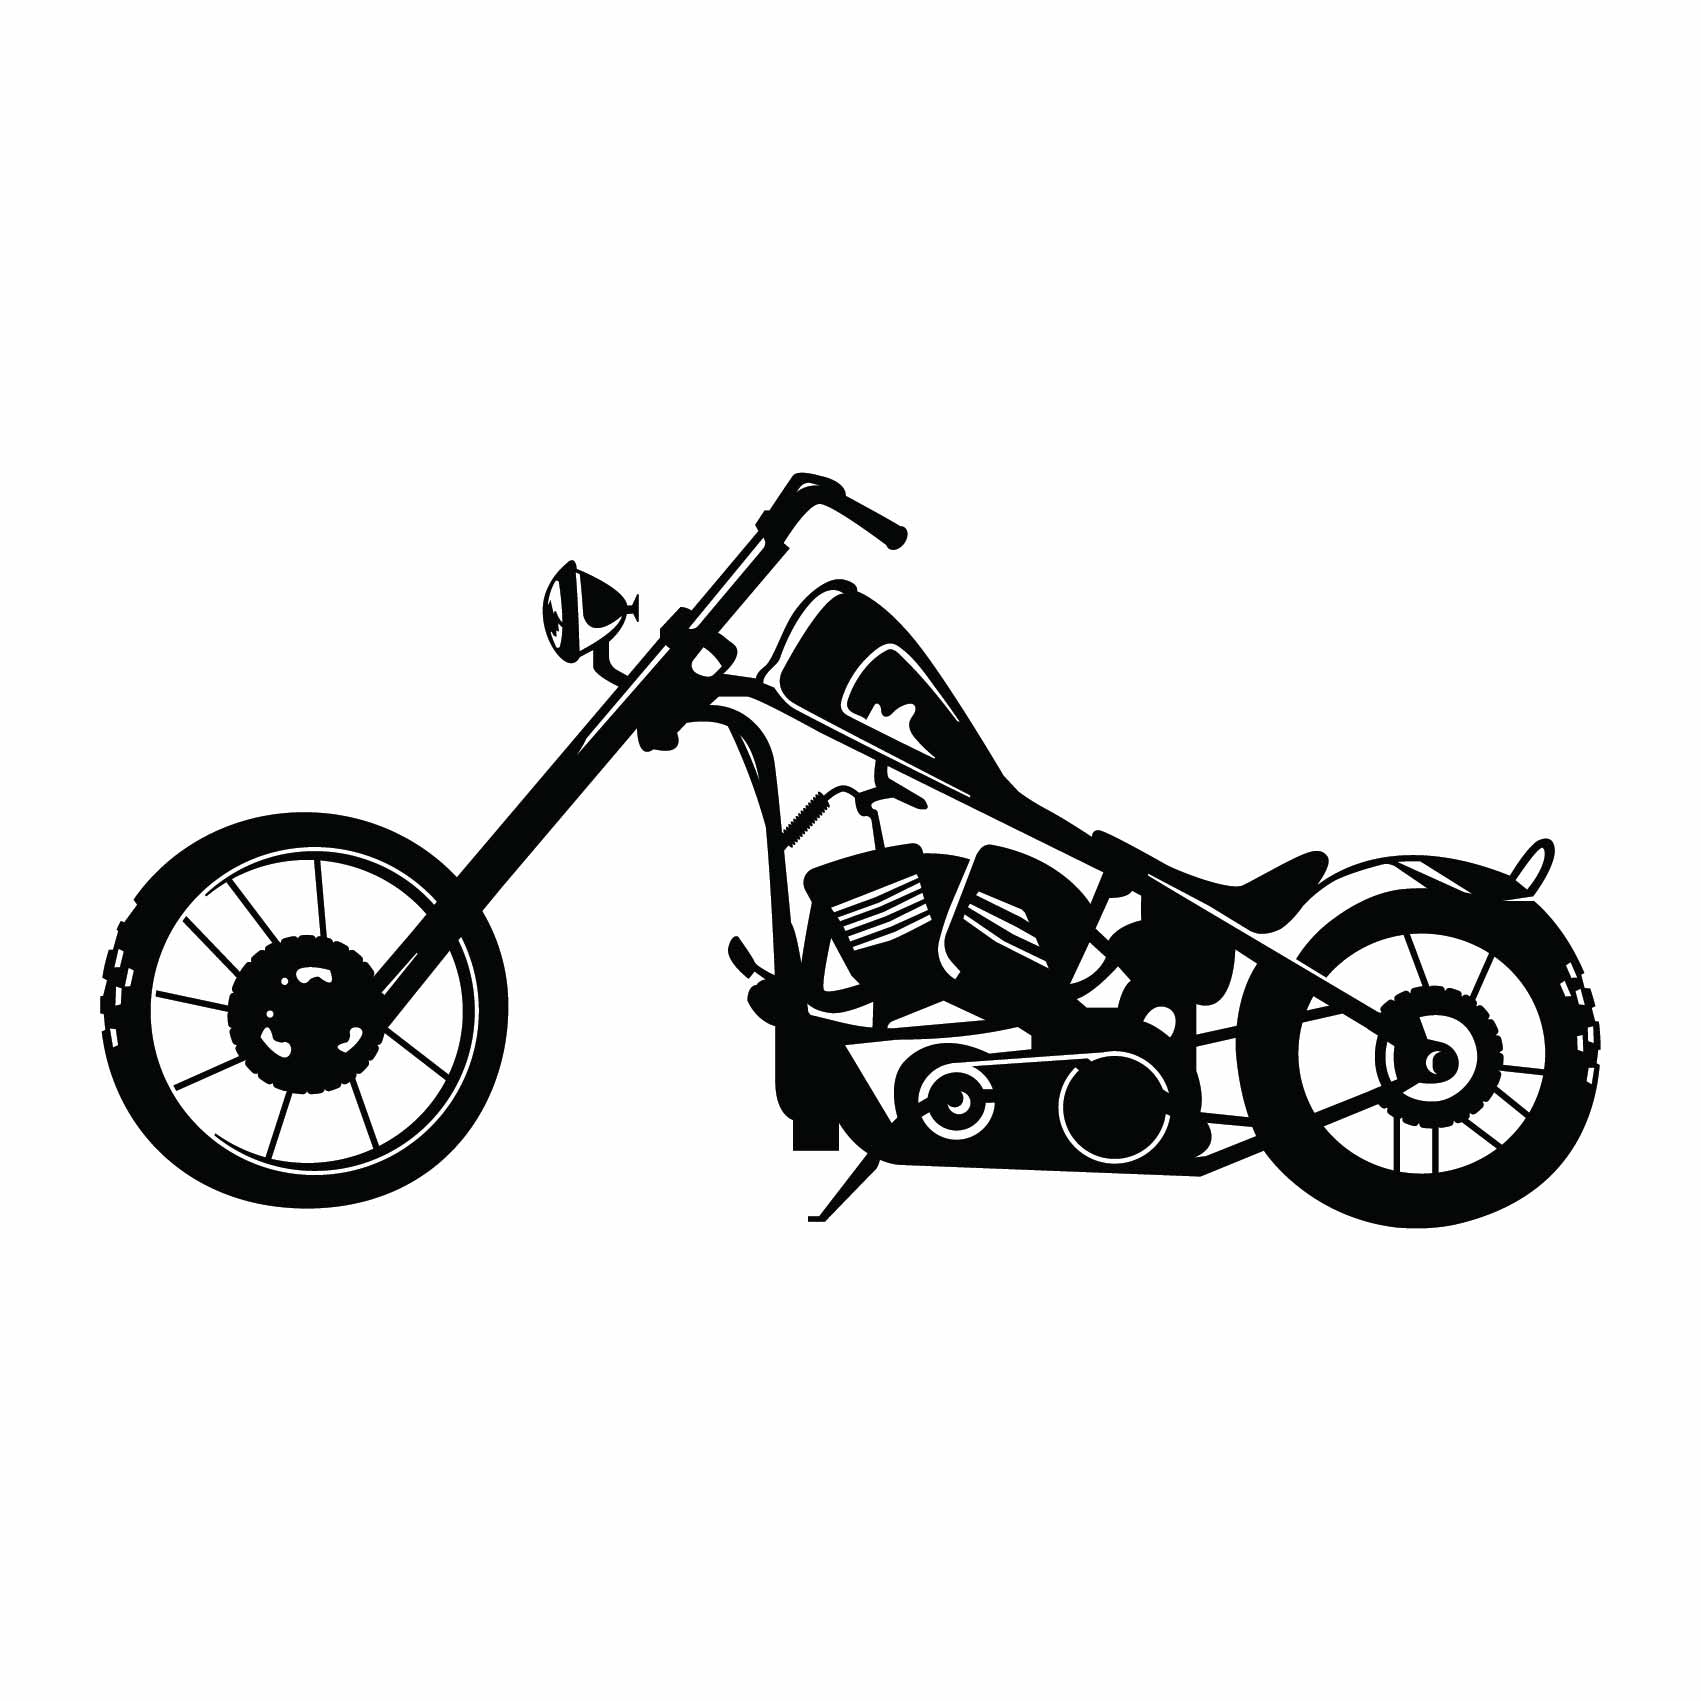 stickers-deco-moto-chopper-ref27moto-stickers-muraux-moto-autocollant-salon-chambre-sticker-mural-moto-deco-(2)